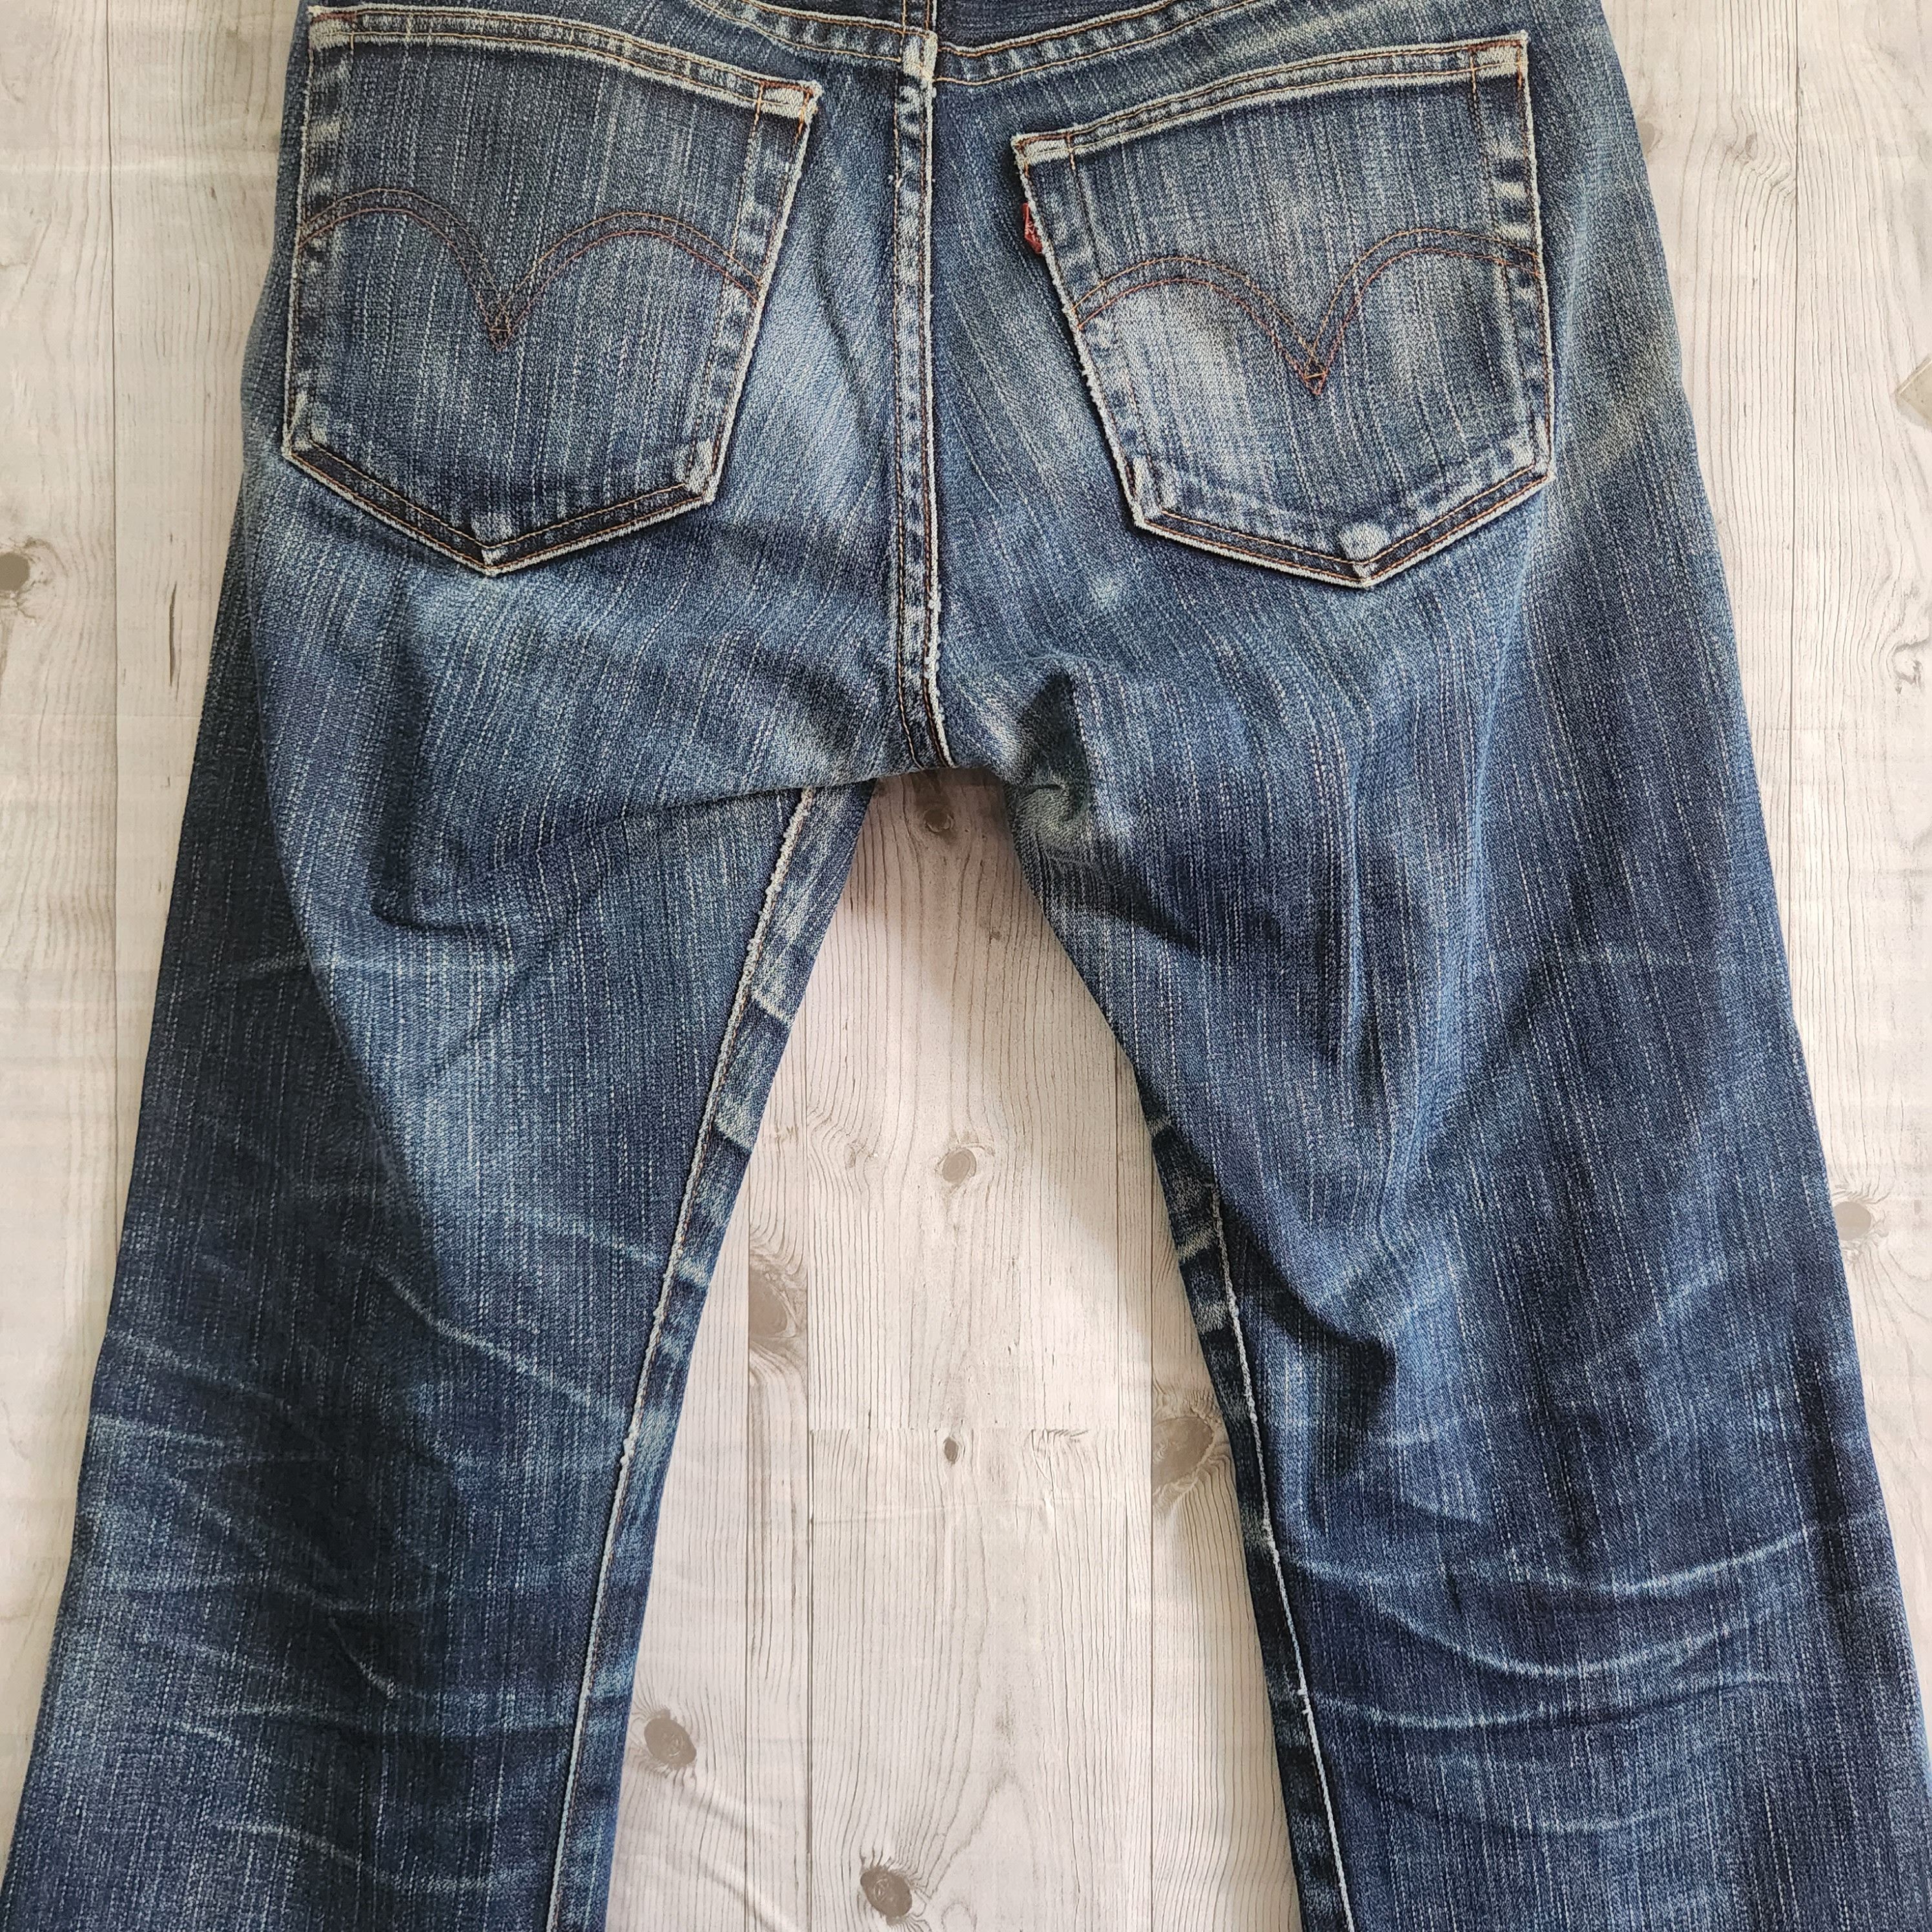 Levis 505 Premium Distressed Denim Jeans - 8